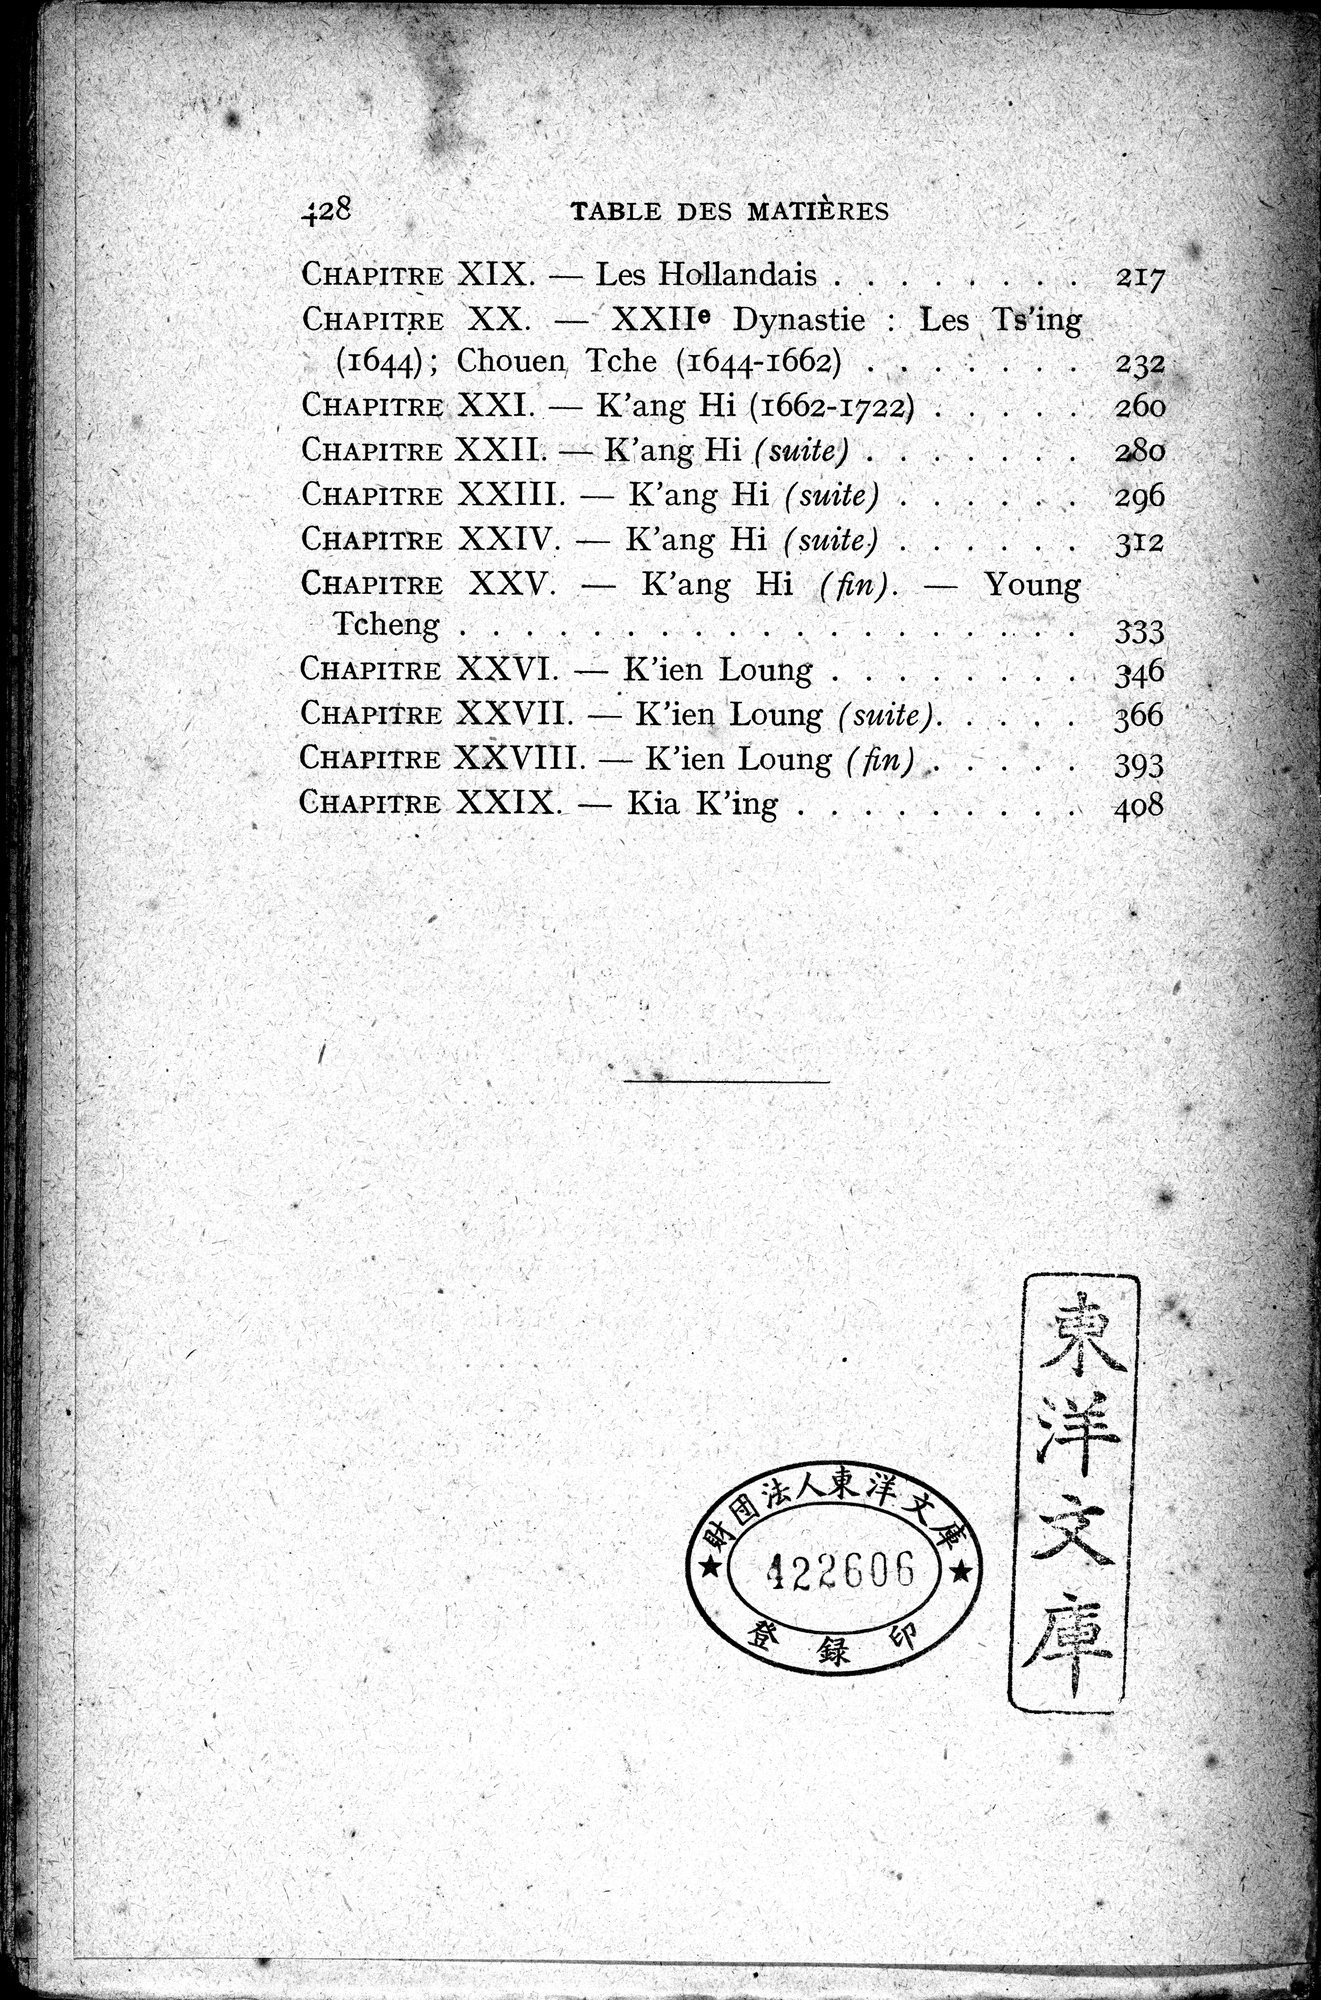 Histoire Générale de la Chine : vol.3 / Page 430 (Grayscale High Resolution Image)